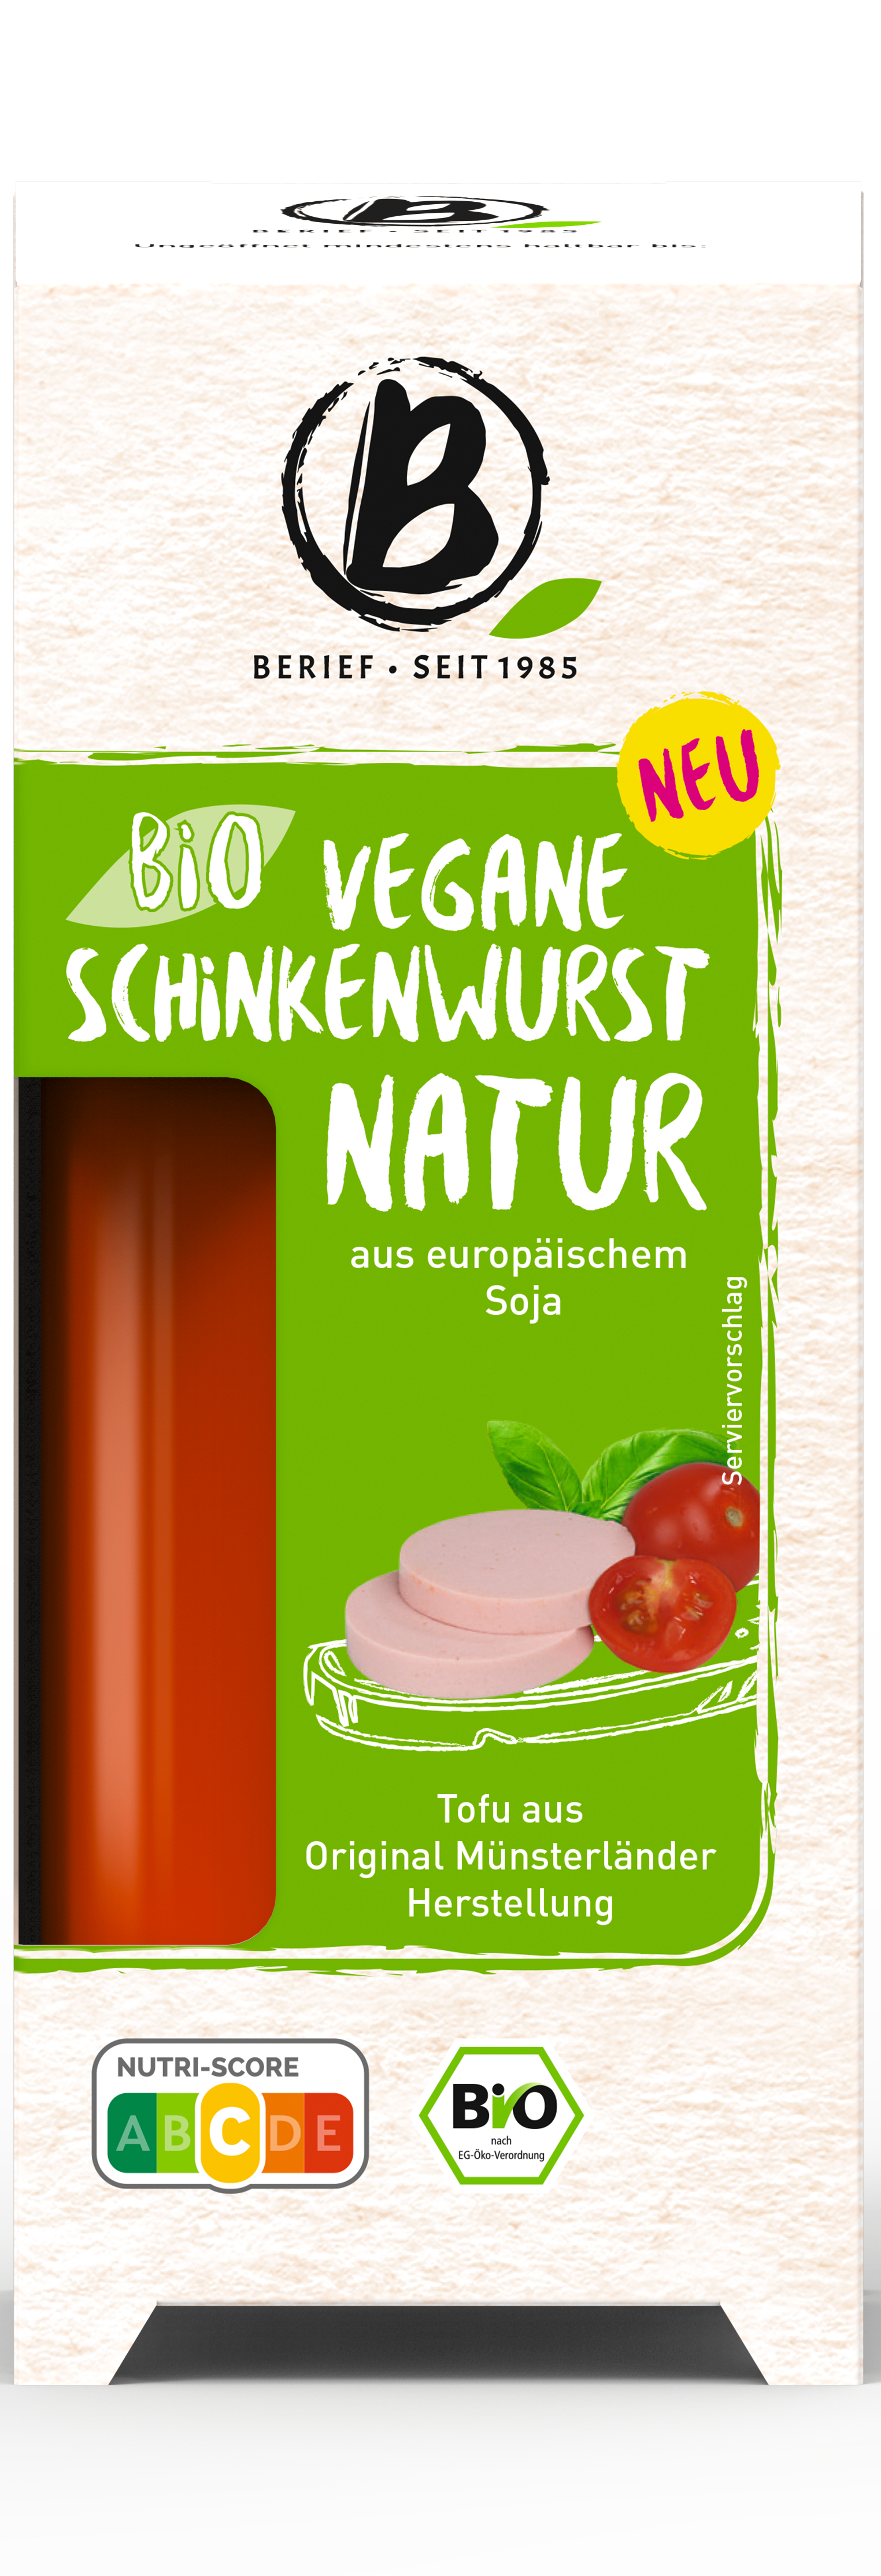 Bio vegane Schinkenwurst Natur 3